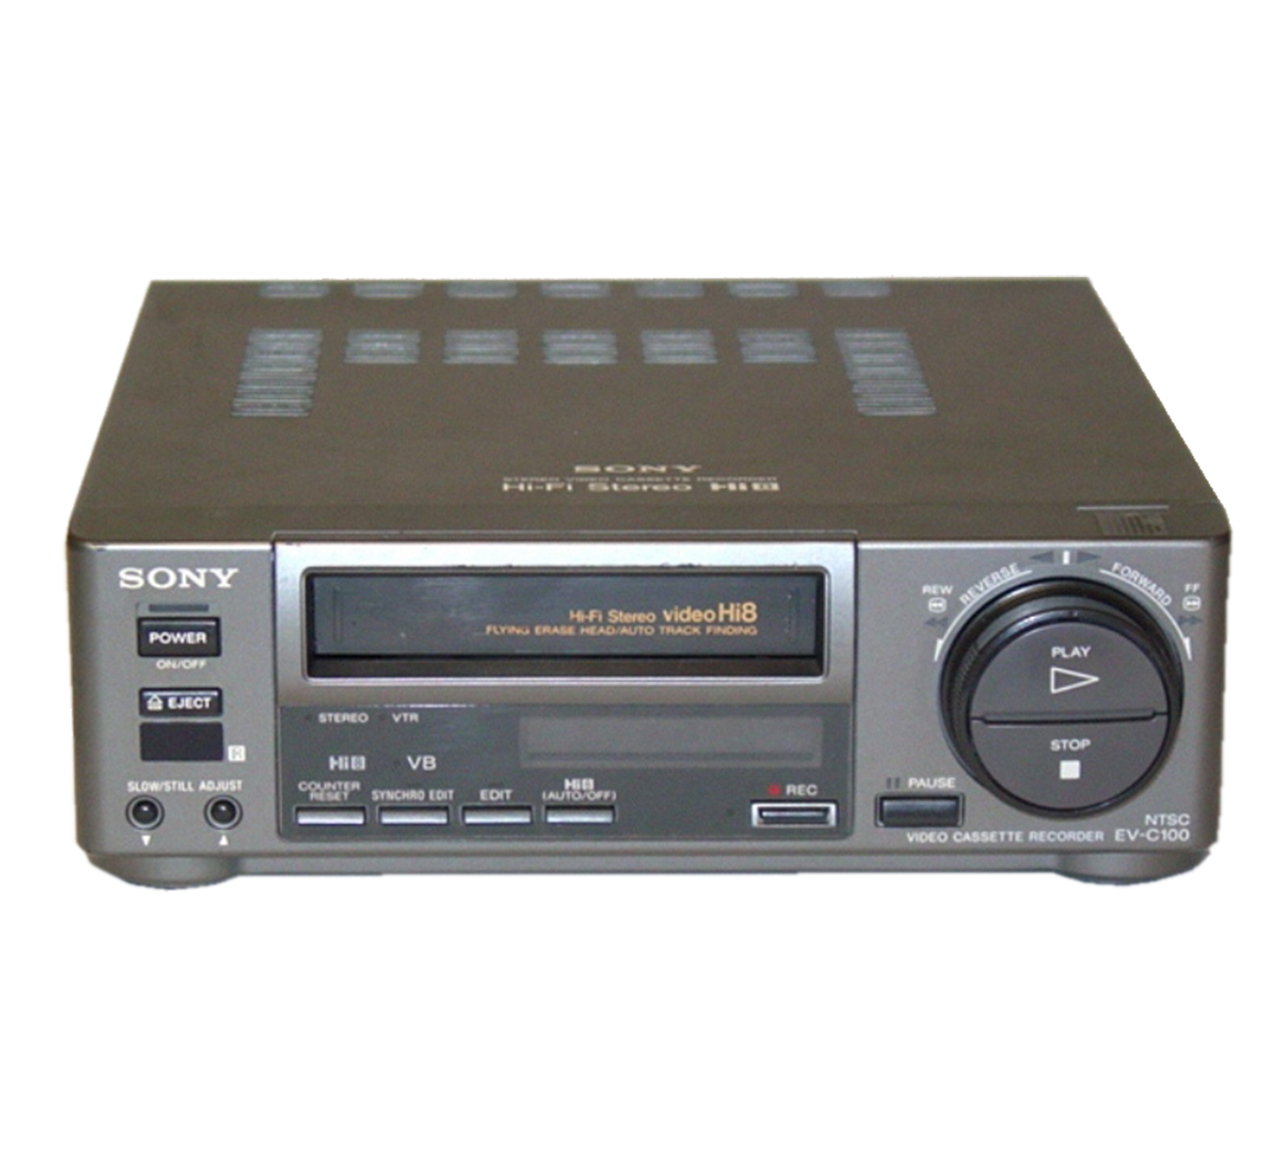 Sony EV-C100 Hi8 Video8 VCR